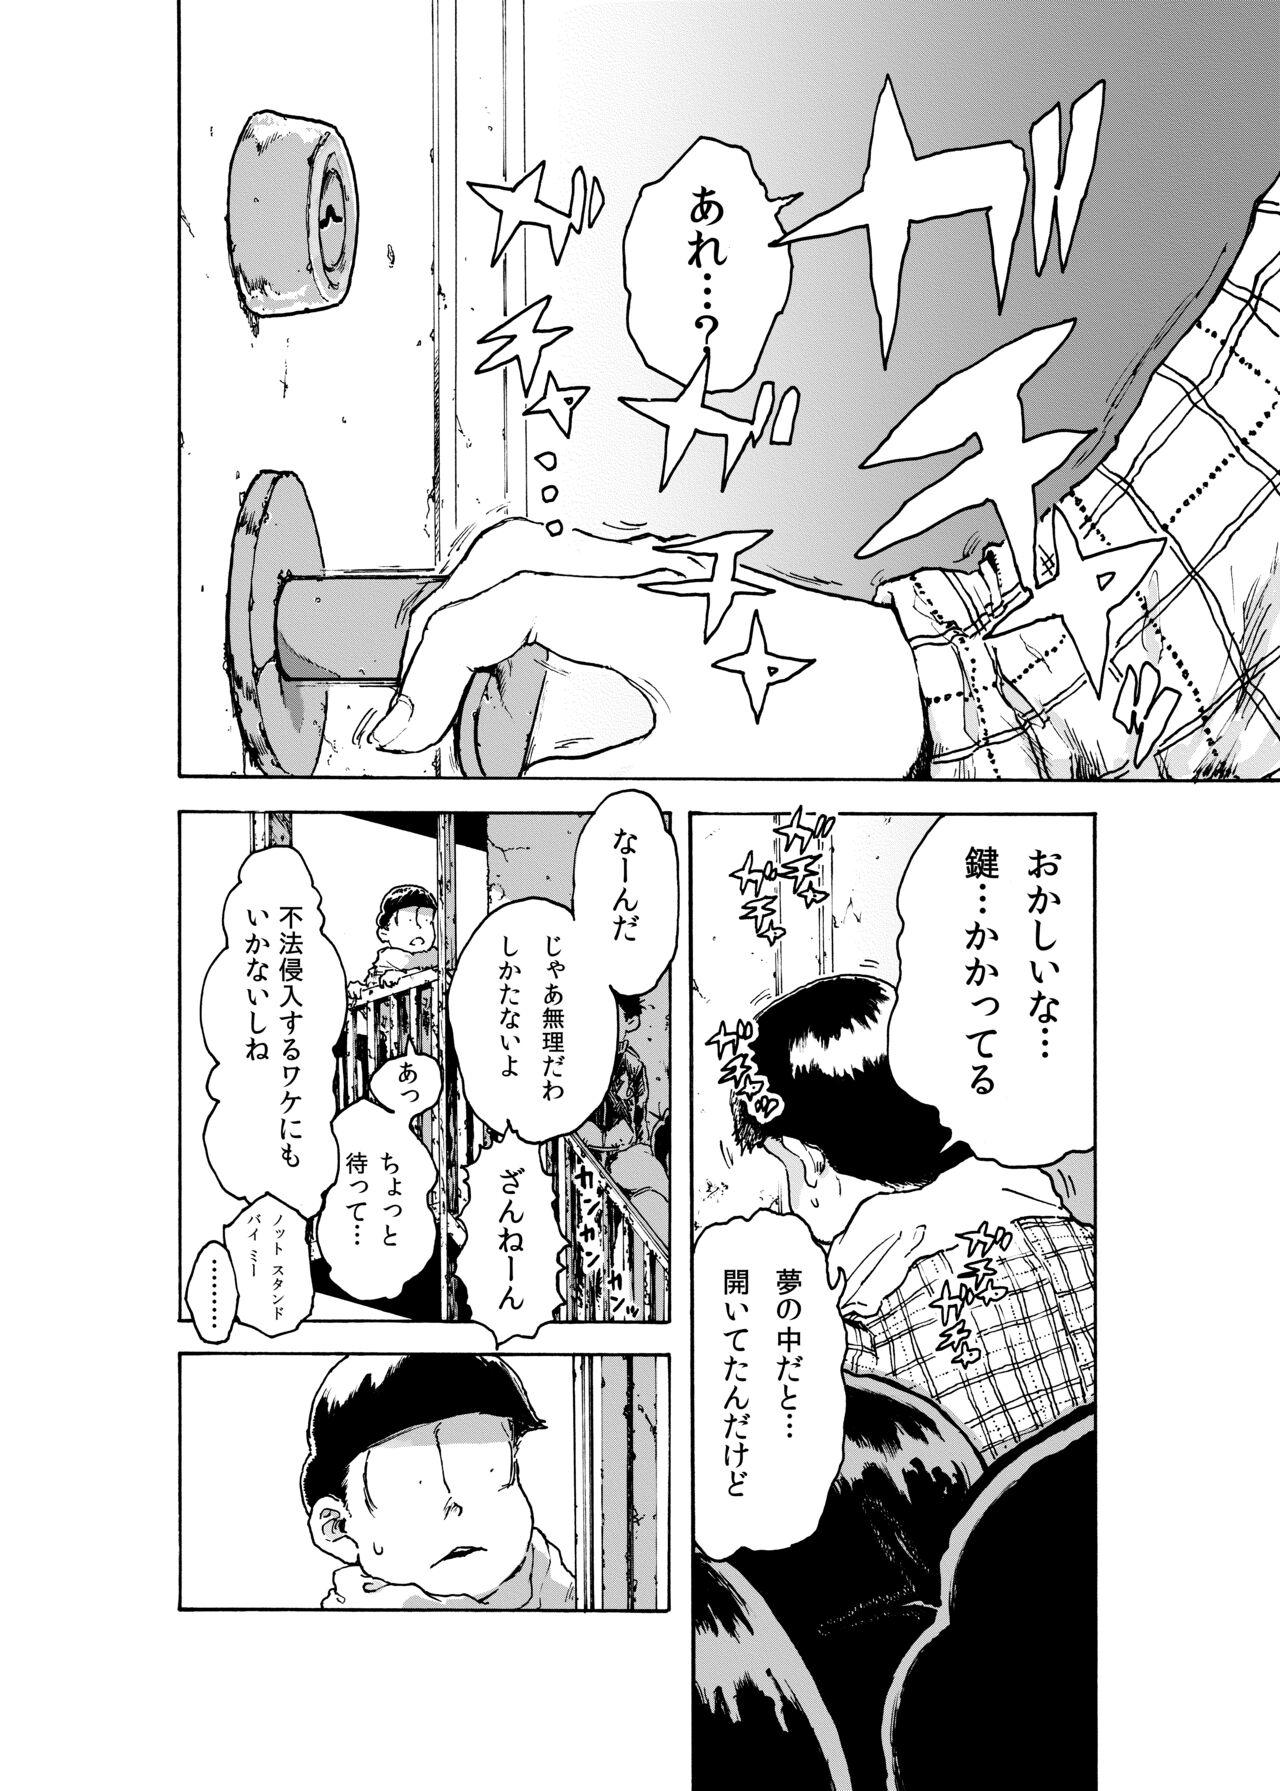 Big Dicks WEB Sairoku 'BUT WHO IS THE DREAMRE?' - Osomatsu san Cash - Page 2